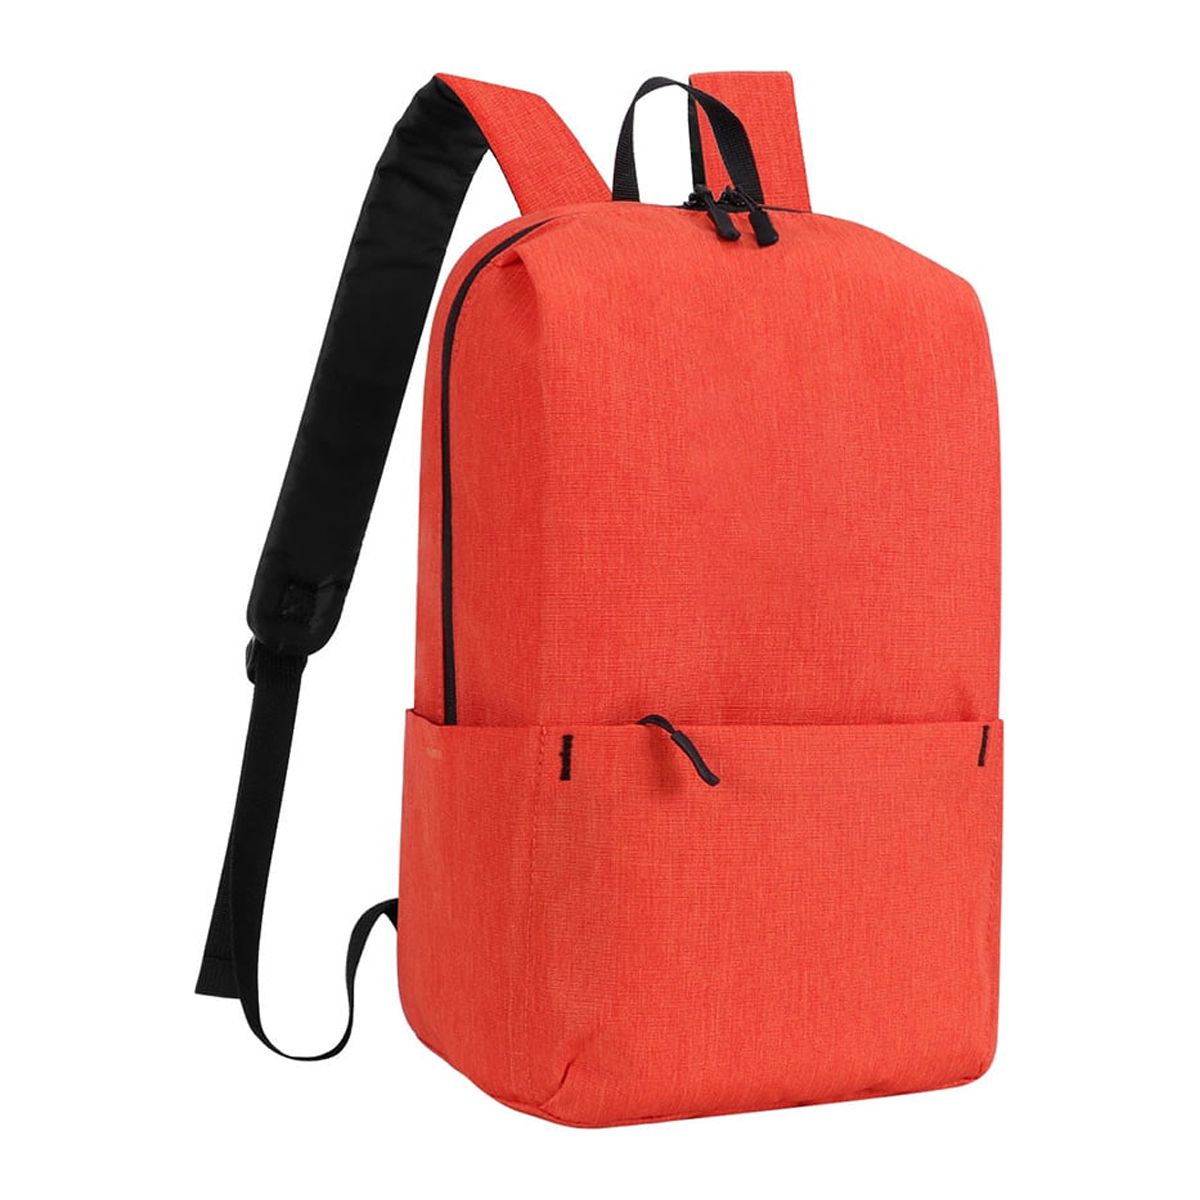 HAWEE Mini Backpack Purse Small Travel Backpack Sling Lightweight Shoulder Bag Daypack for Women & Men - image 1 of 7